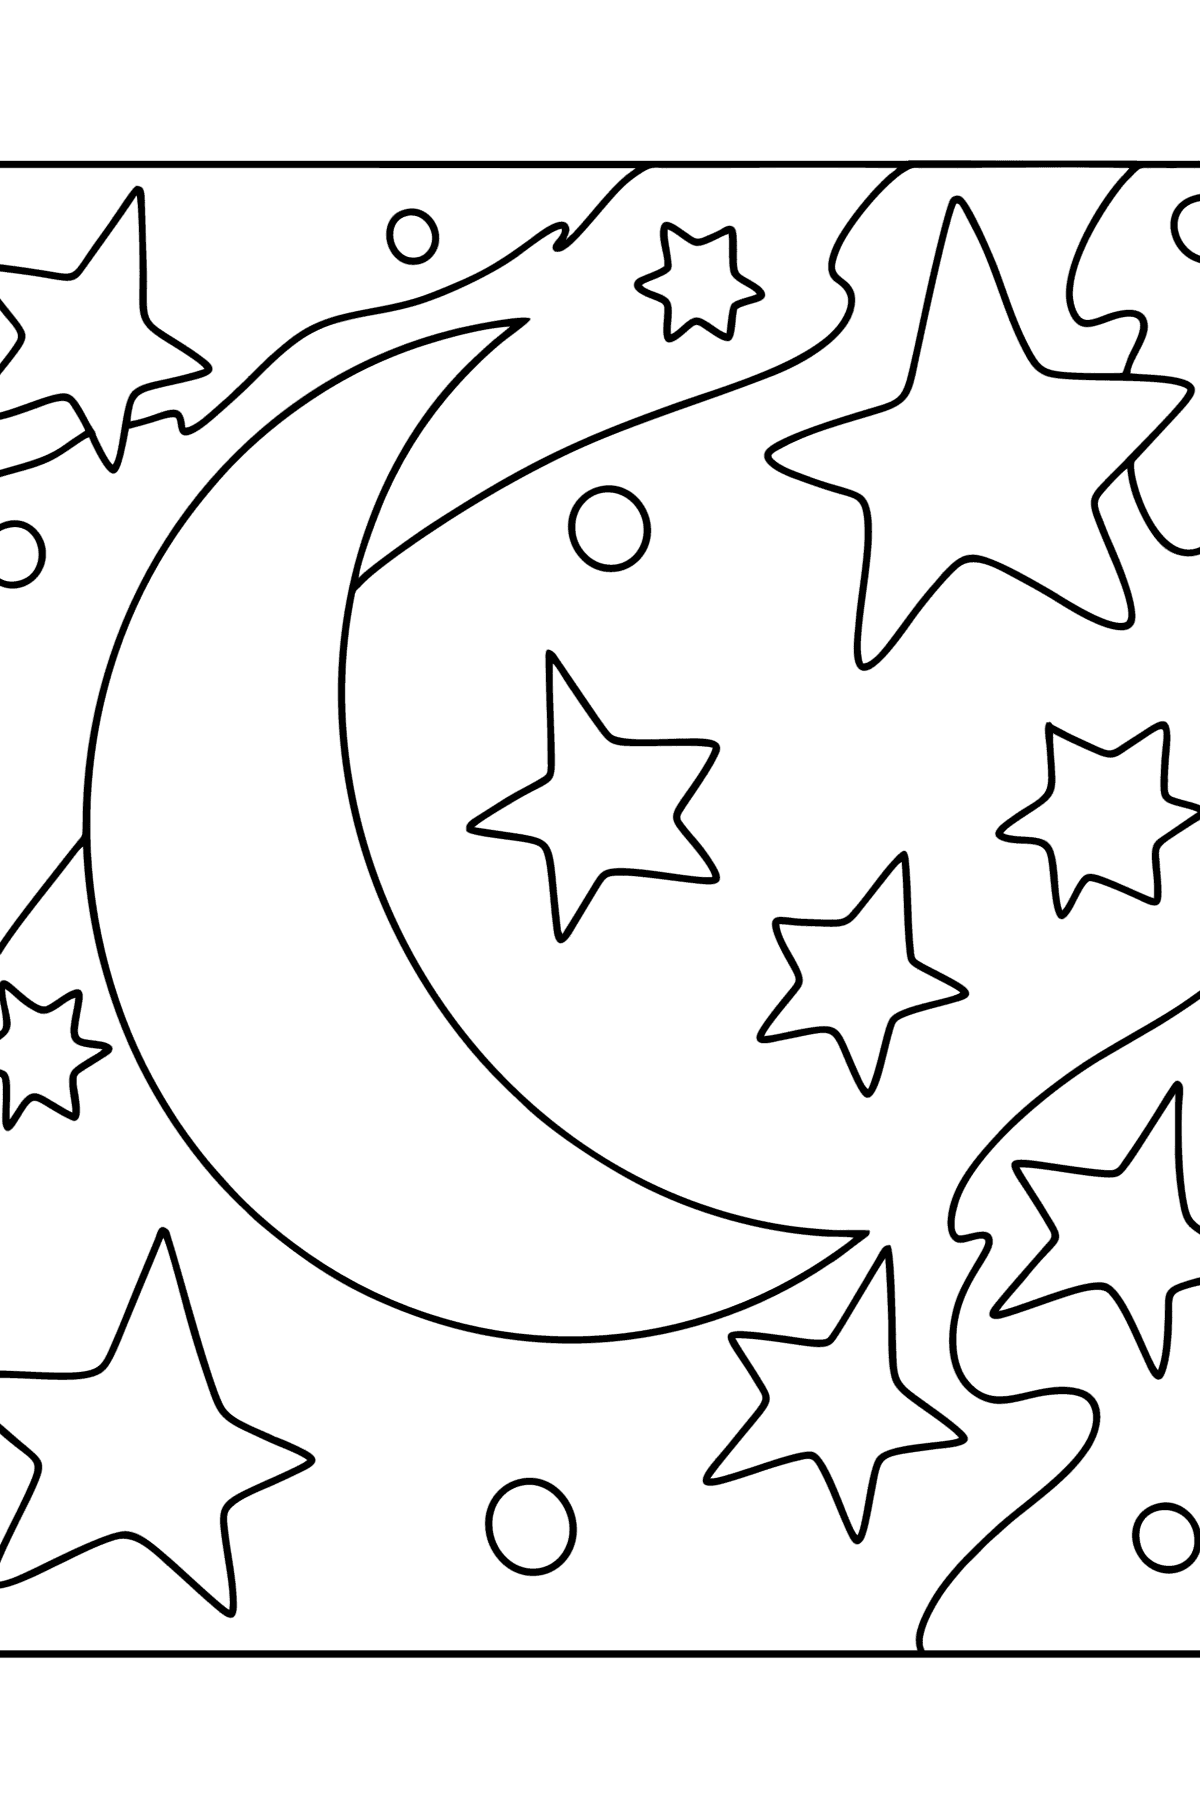 Maan en sterren kleurplaat - kleurplaten voor kinderen